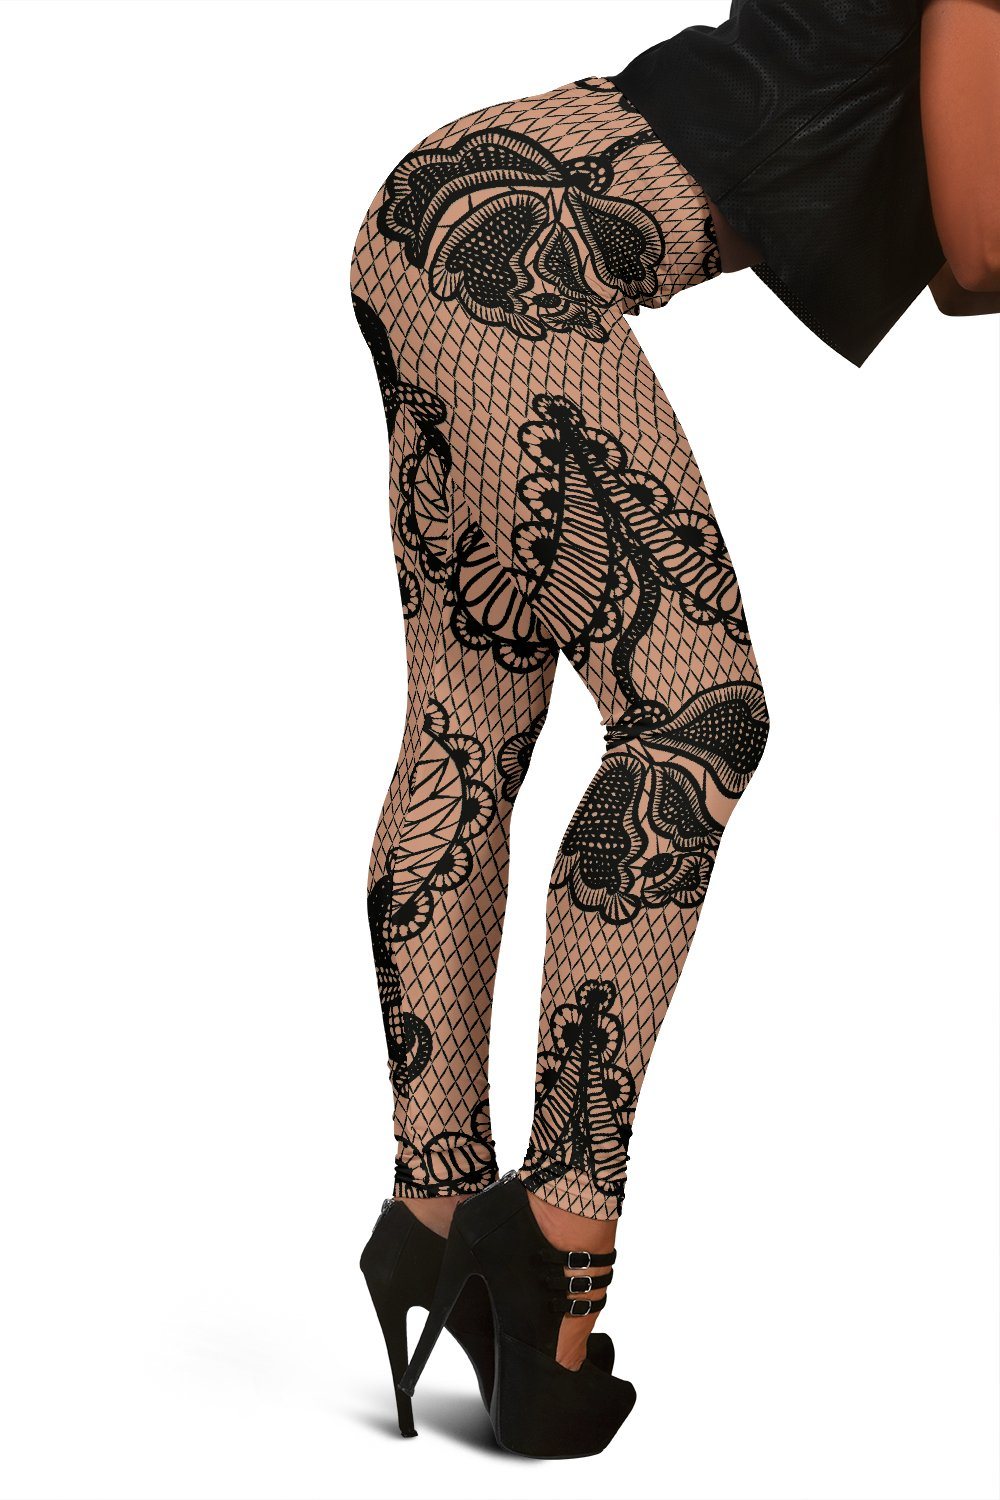 Black Lace Leggings GearRex 